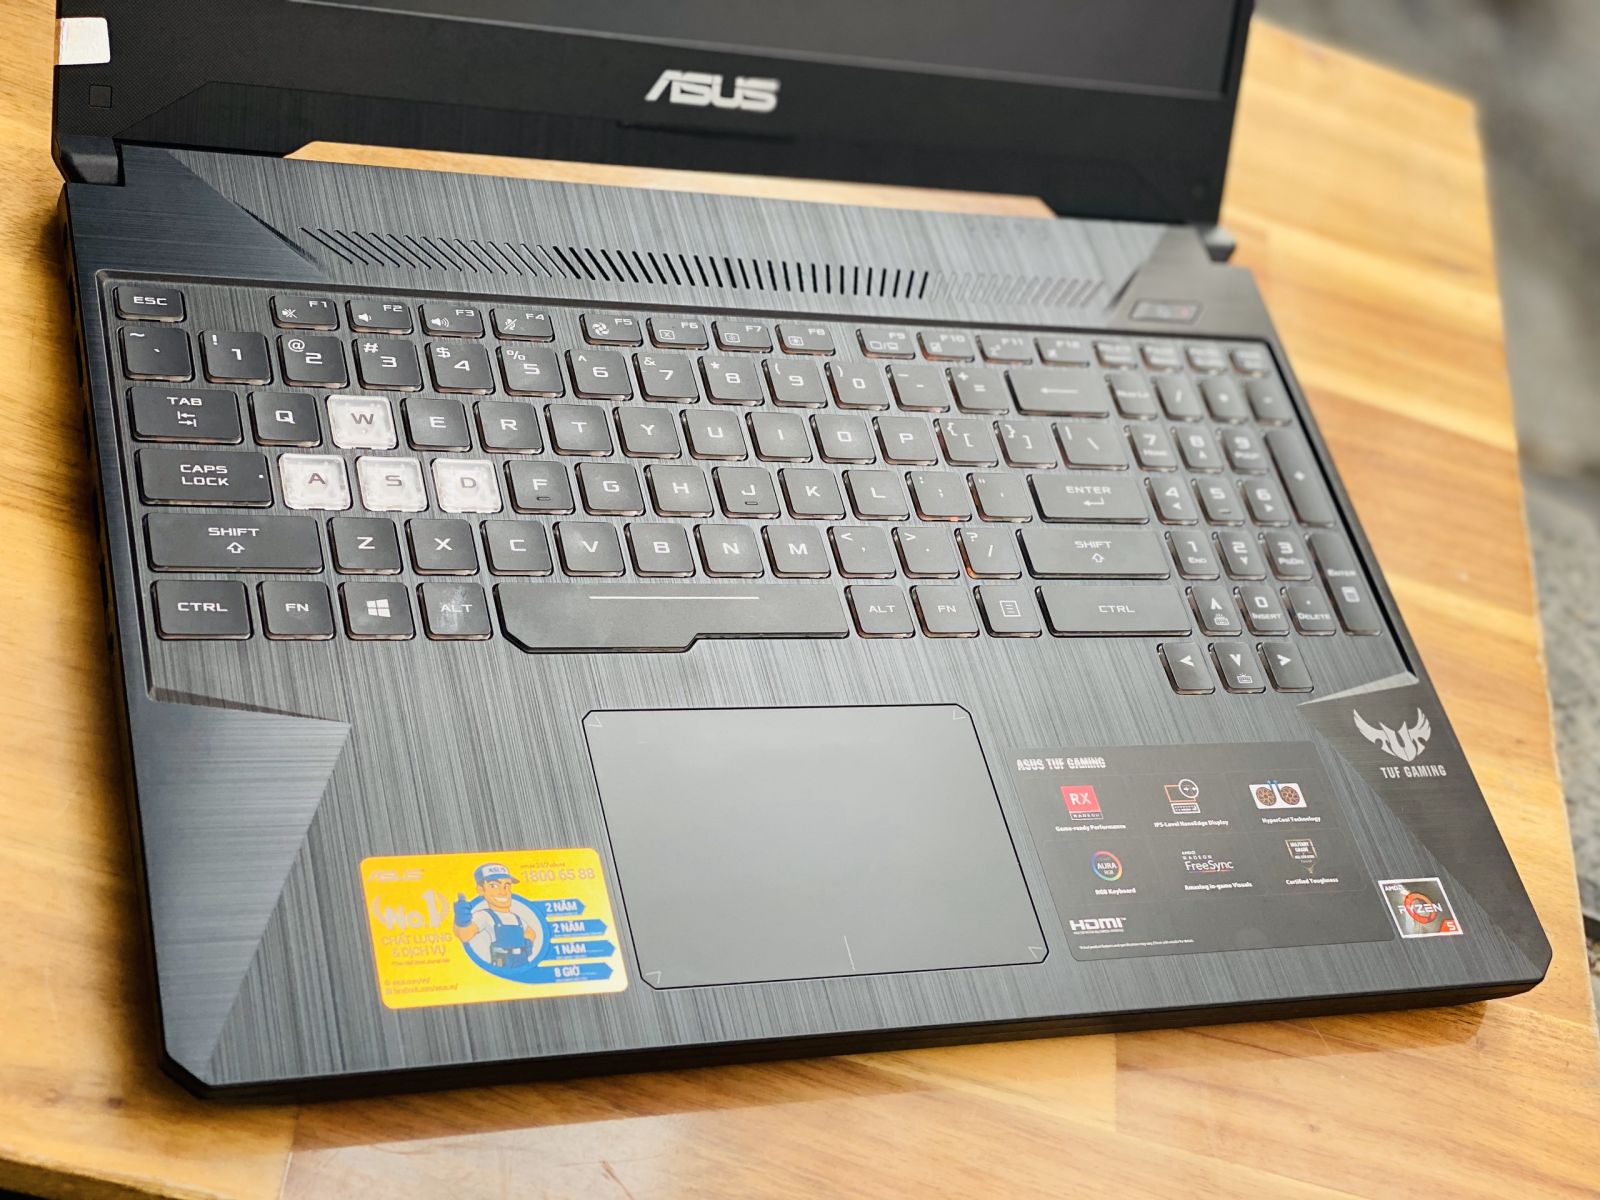 Laptop Asus TUF Gaming FX505GD i5 8300H/ 8G/ SSD128+1000G/ GTX1050 4G/ Viền Mỏng/ LED RGB 7 Màu/ Giá rẻ4